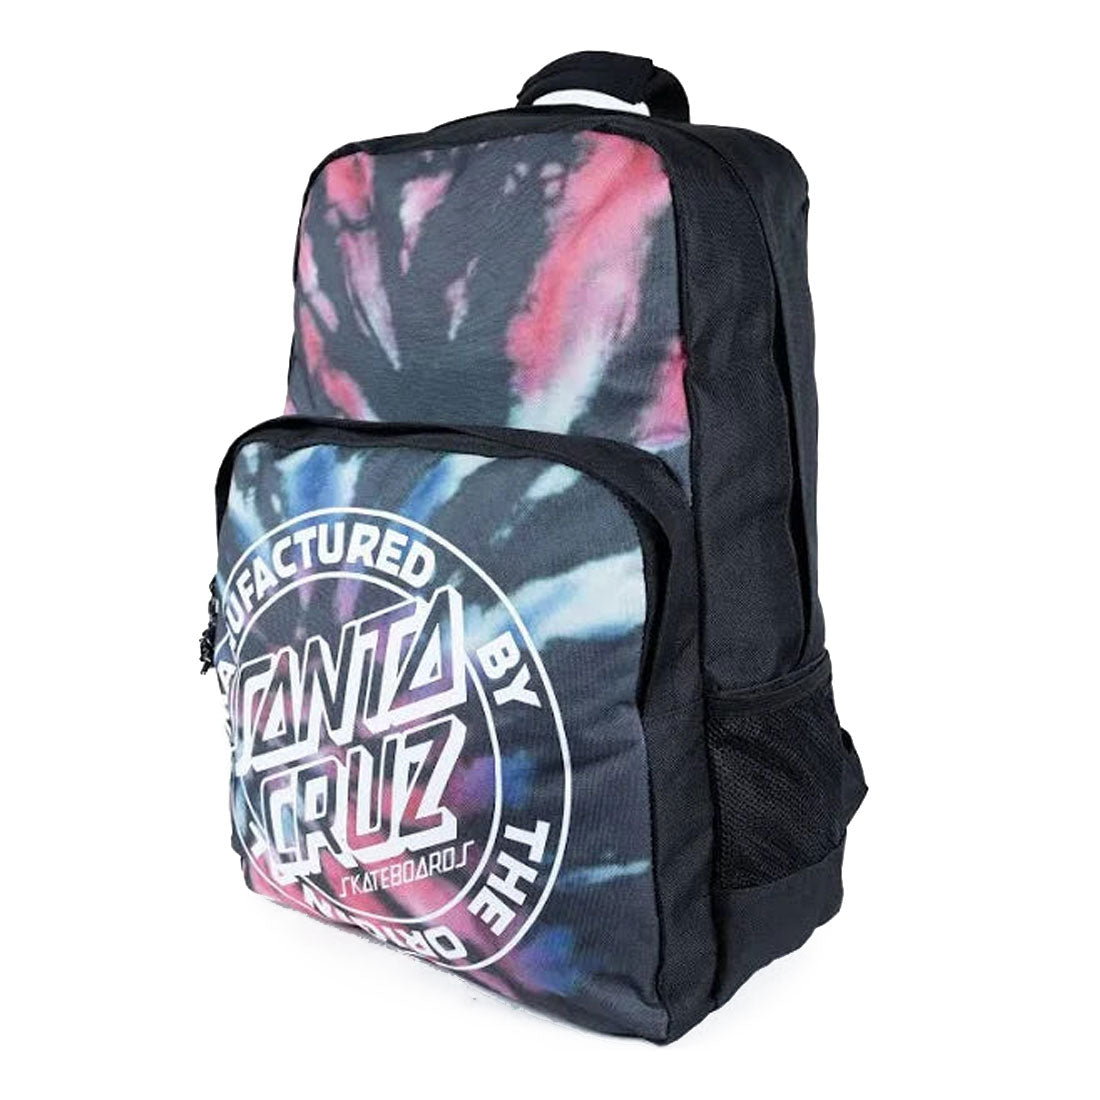 Santa Cruz MFG Dot Backpack - Multi Tie Dye Bags and Backpacks